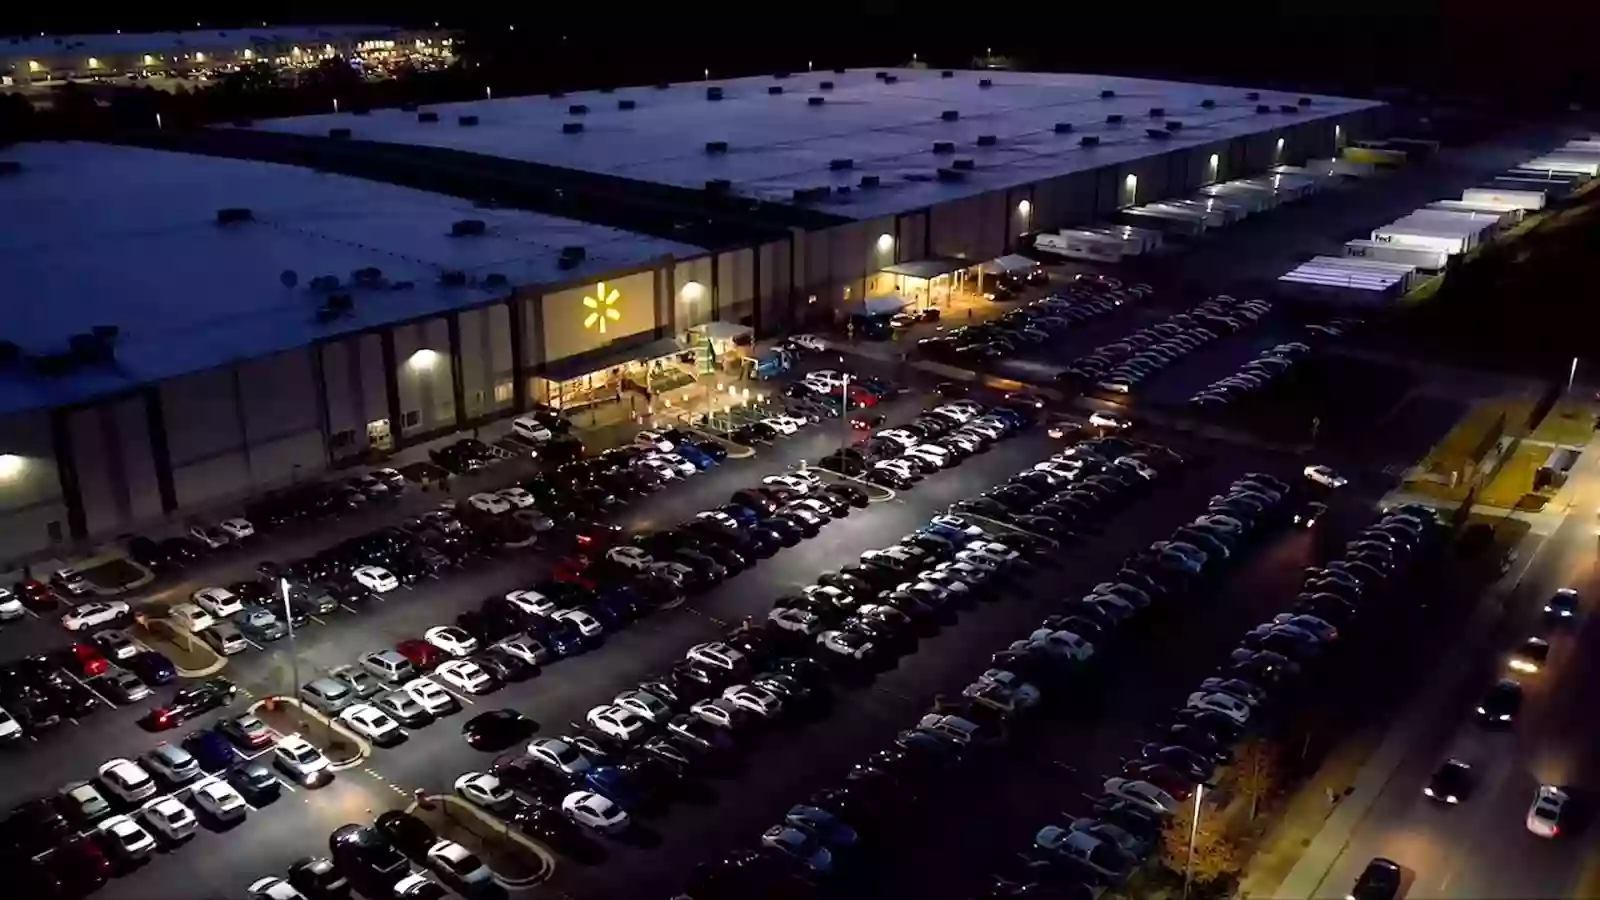 Walmart Distribution Center - Sparks, NV